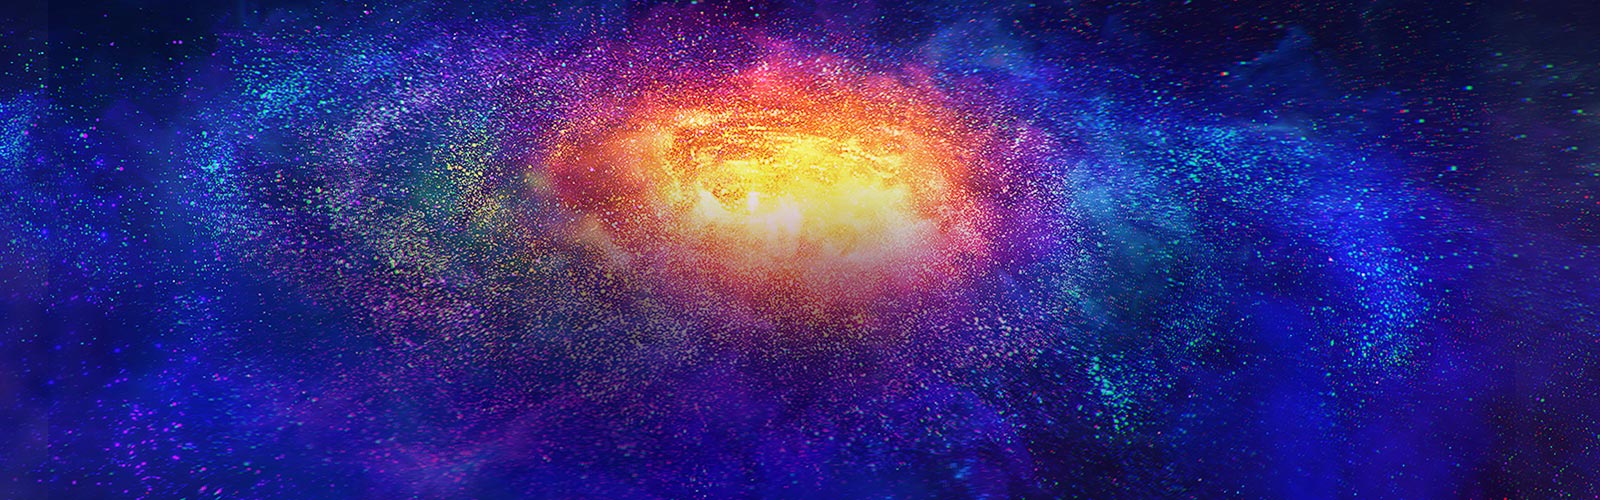 Εκατομμύρια μικροσκοπικά πολύχρωμα σωματίδια στο διάστημα